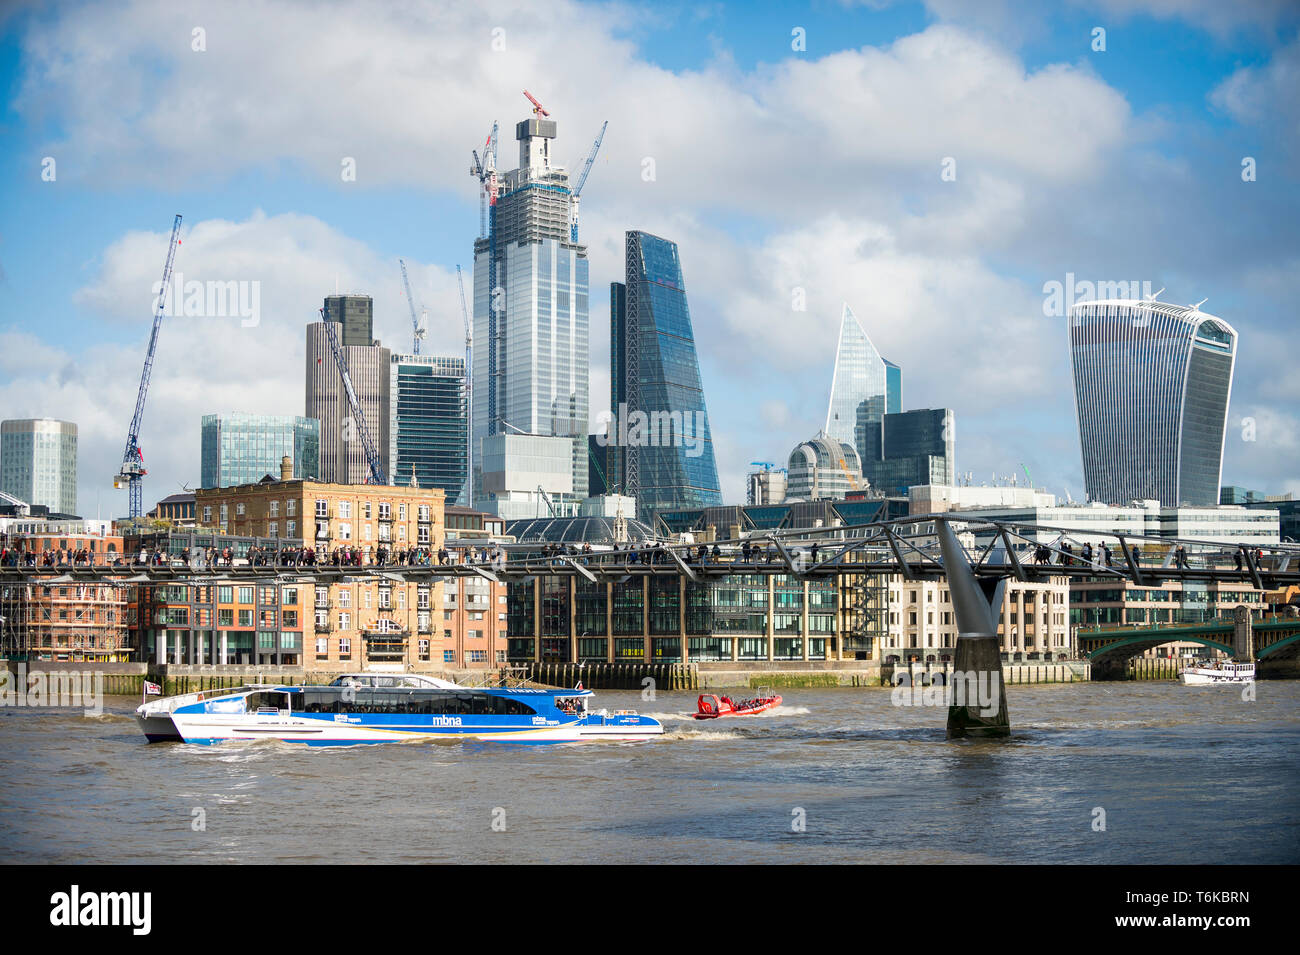 Londra - 10 novembre 2018: A Thames Clipper catamarano sponsorizzato da MBNA bank passa grattacieli in costruzione nel distretto finanziario. Foto Stock